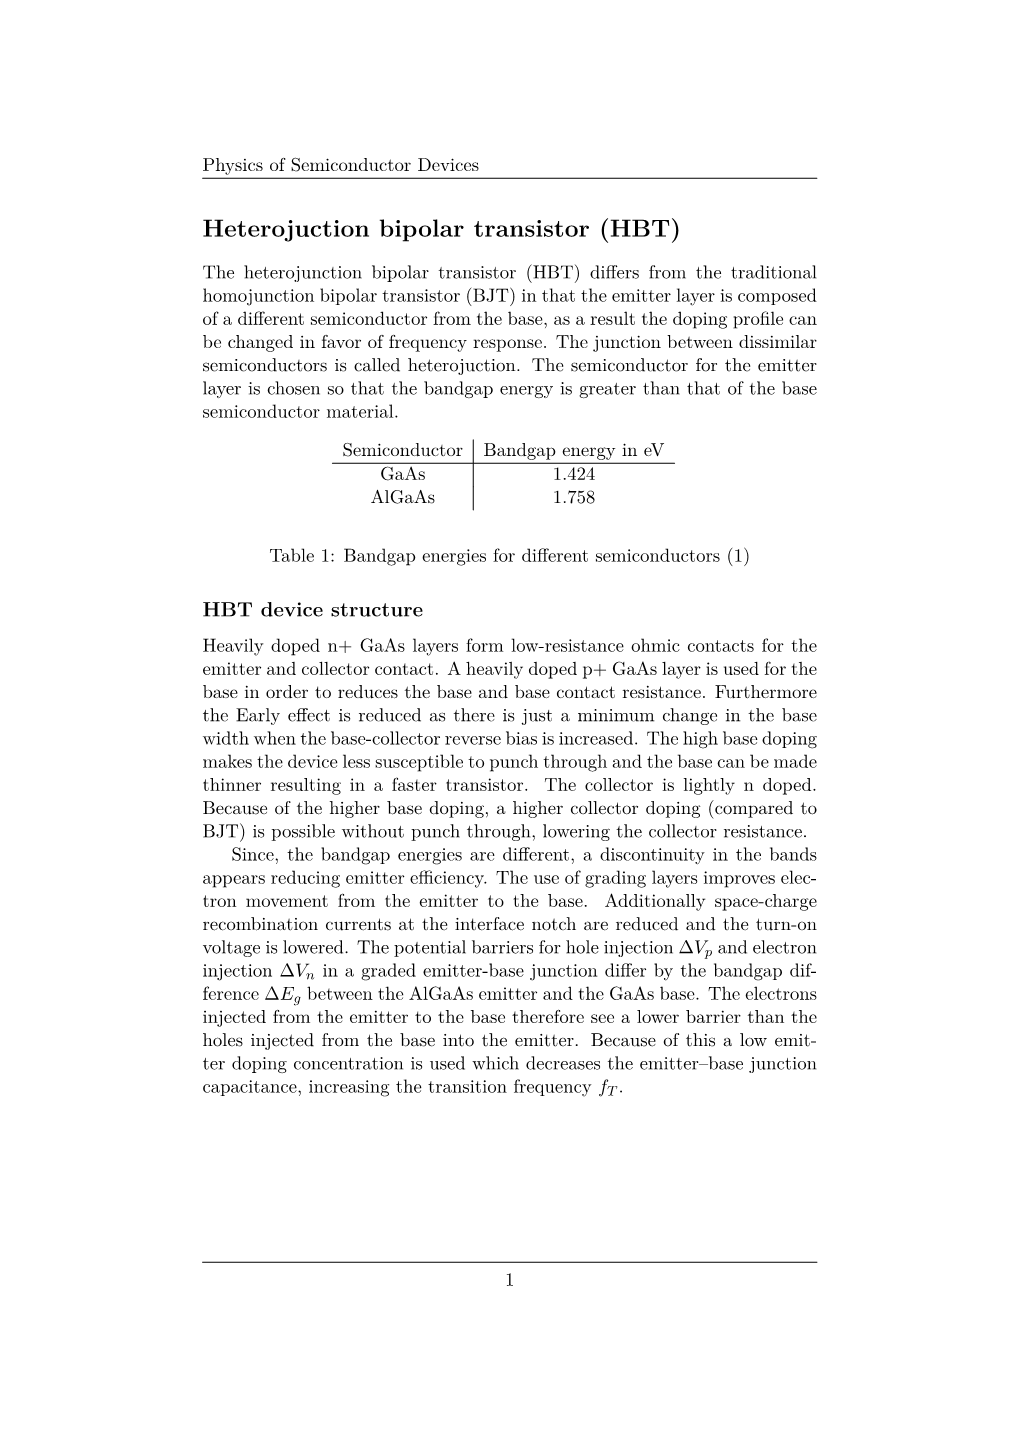 Heterojuction Bipolar Transistor (HBT)